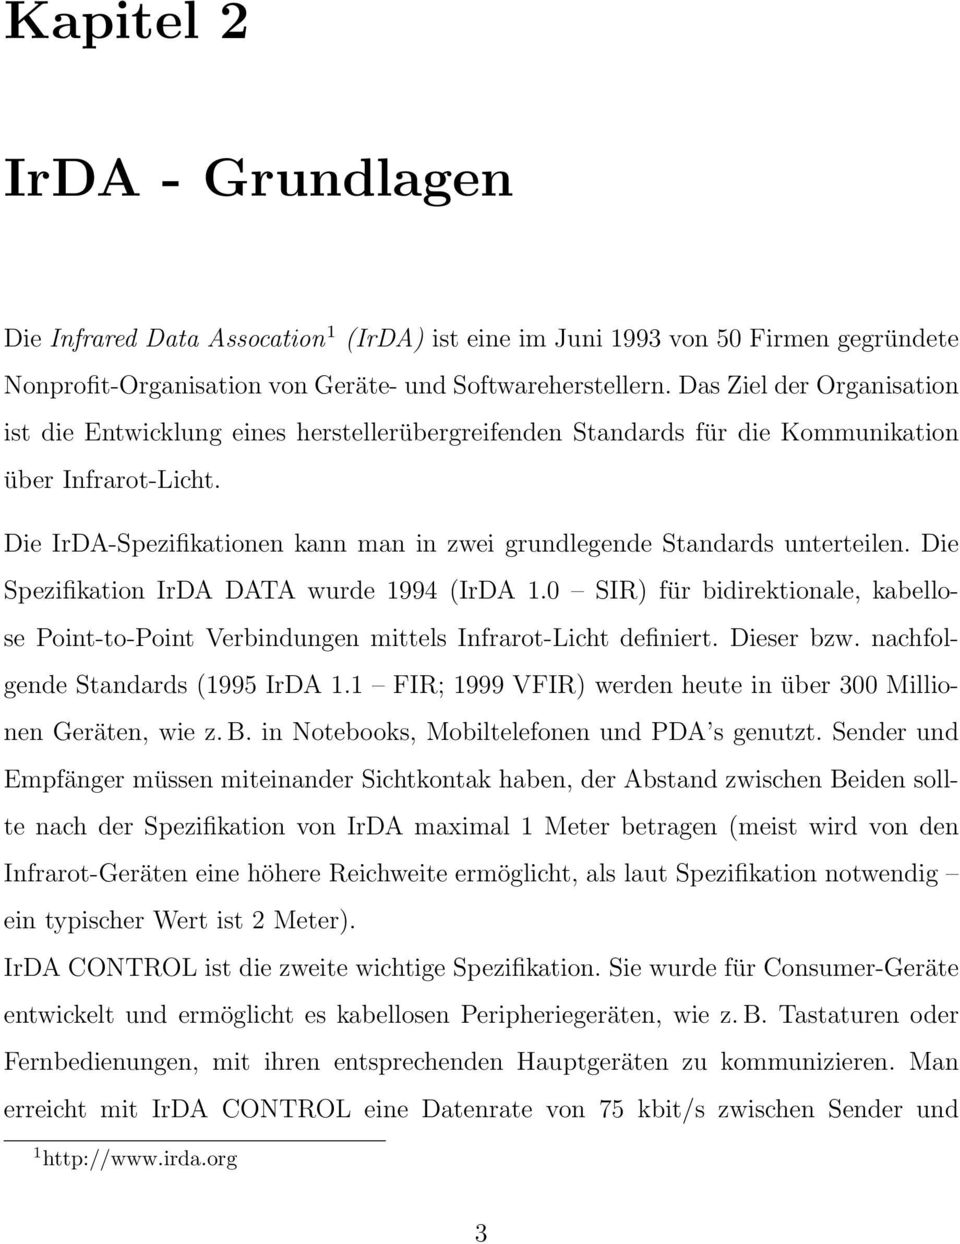 Die IrDA-Spezifikationen kann man in zwei grundlegende Standards unterteilen. Die Spezifikation IrDA DATA wurde 1994 (IrDA 1.